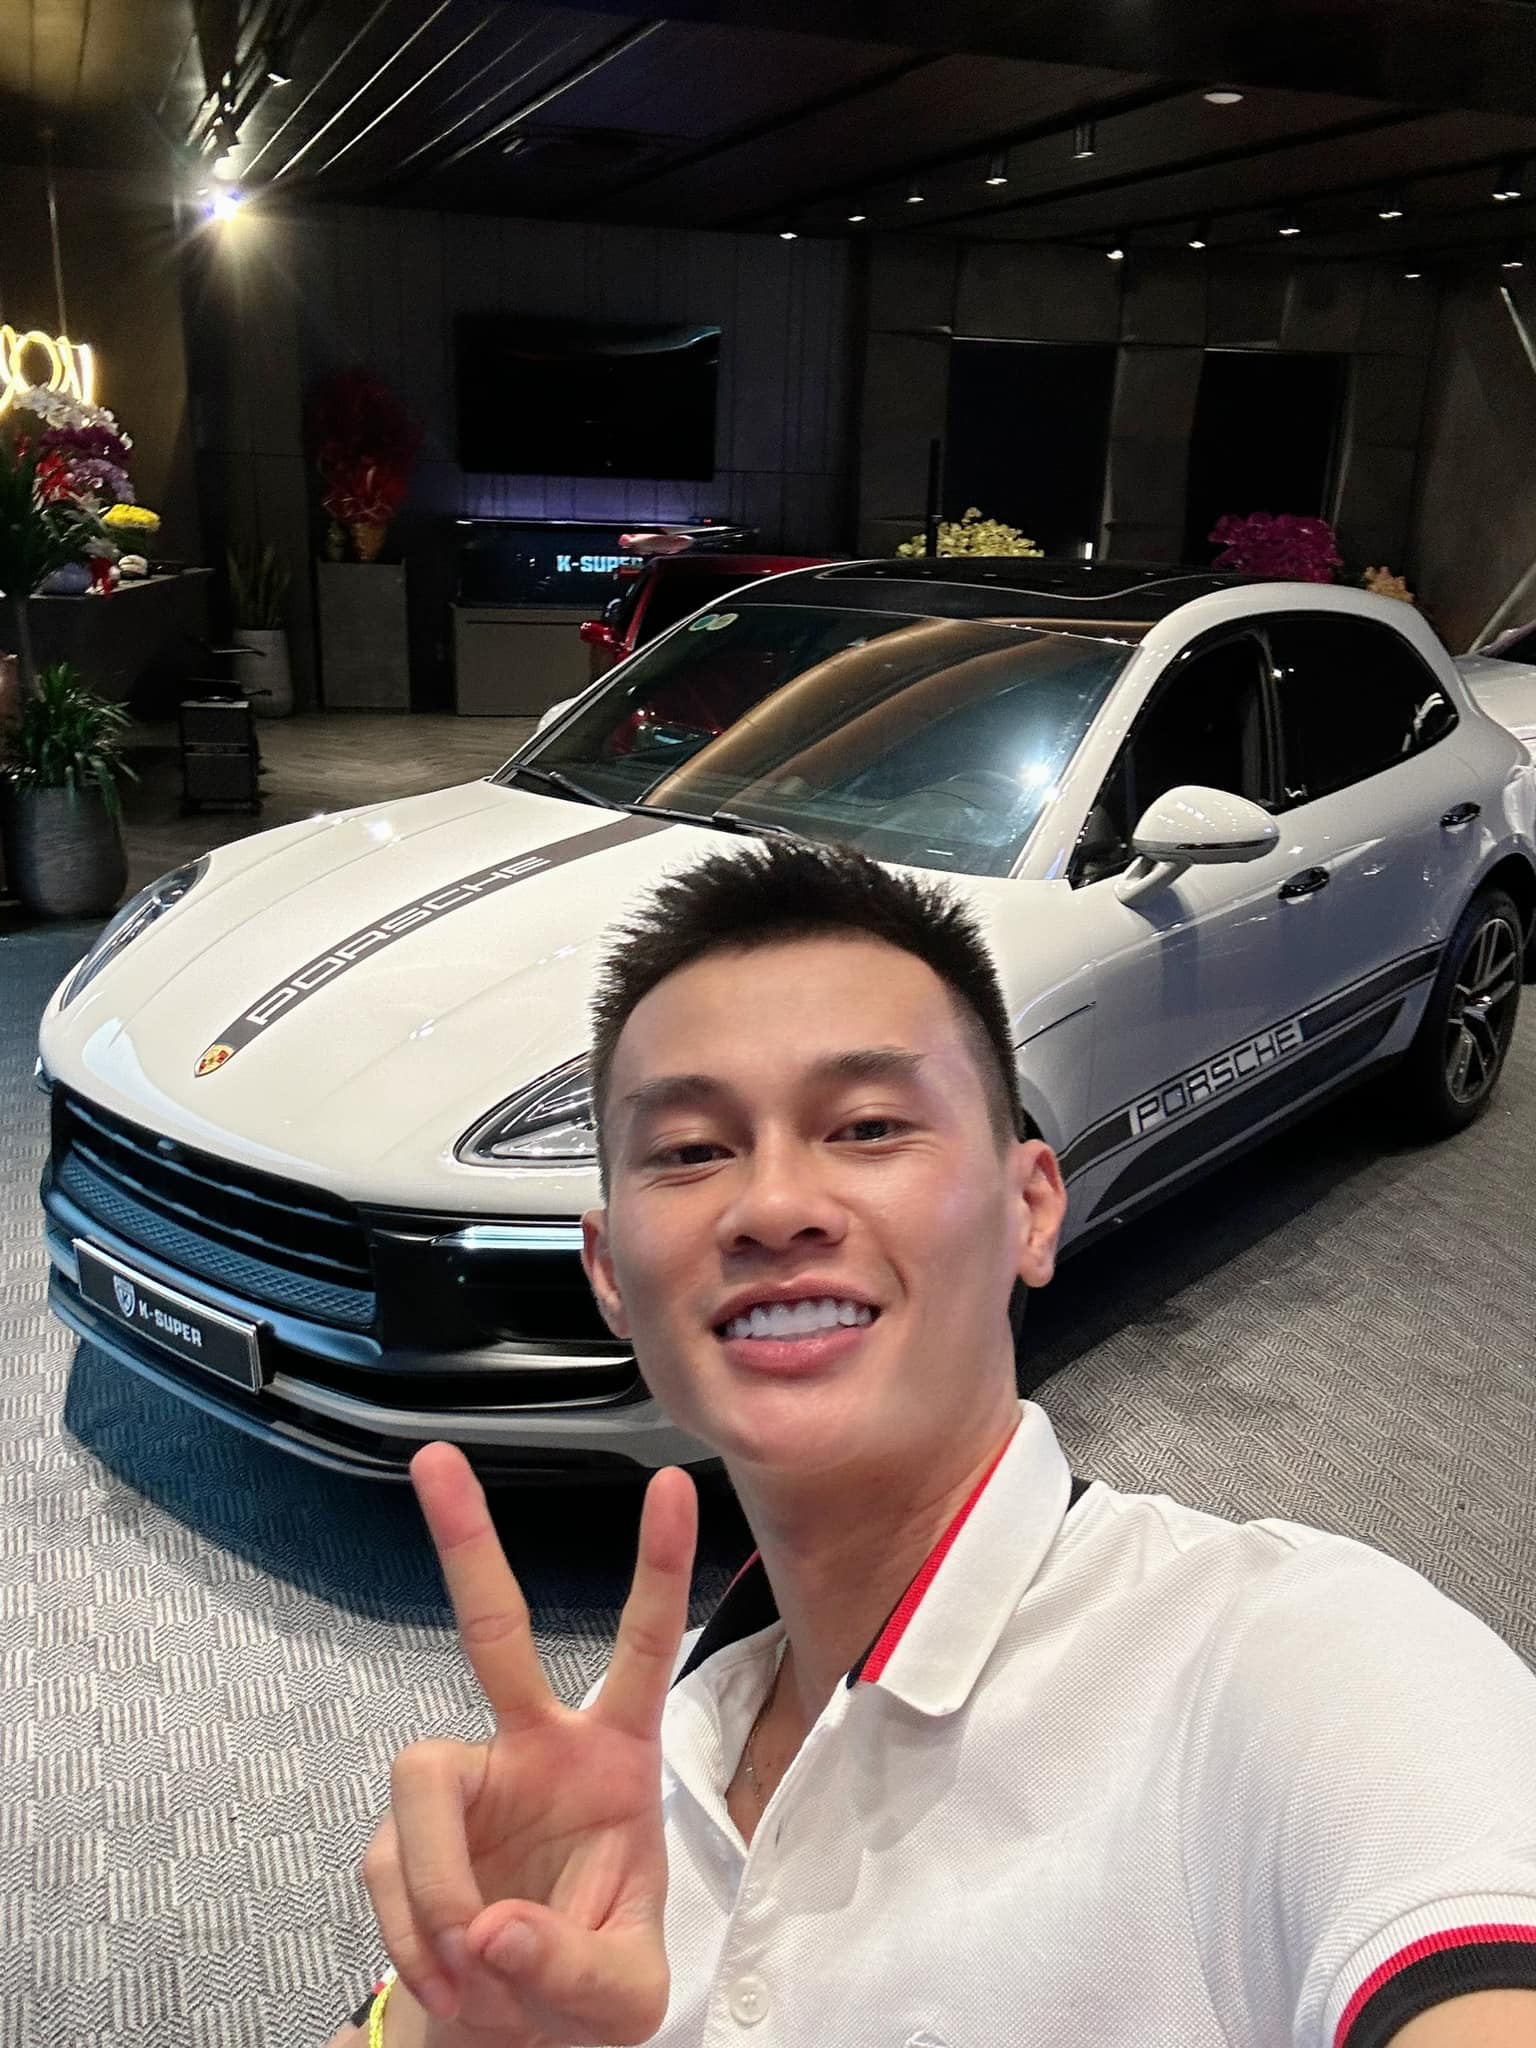 Cư dân mạng phát hiện chiếc siêu xe vừa gặp tai nạn y hệt siêu xe Porsche mà Phan Công Khanh từng selfie cùng.